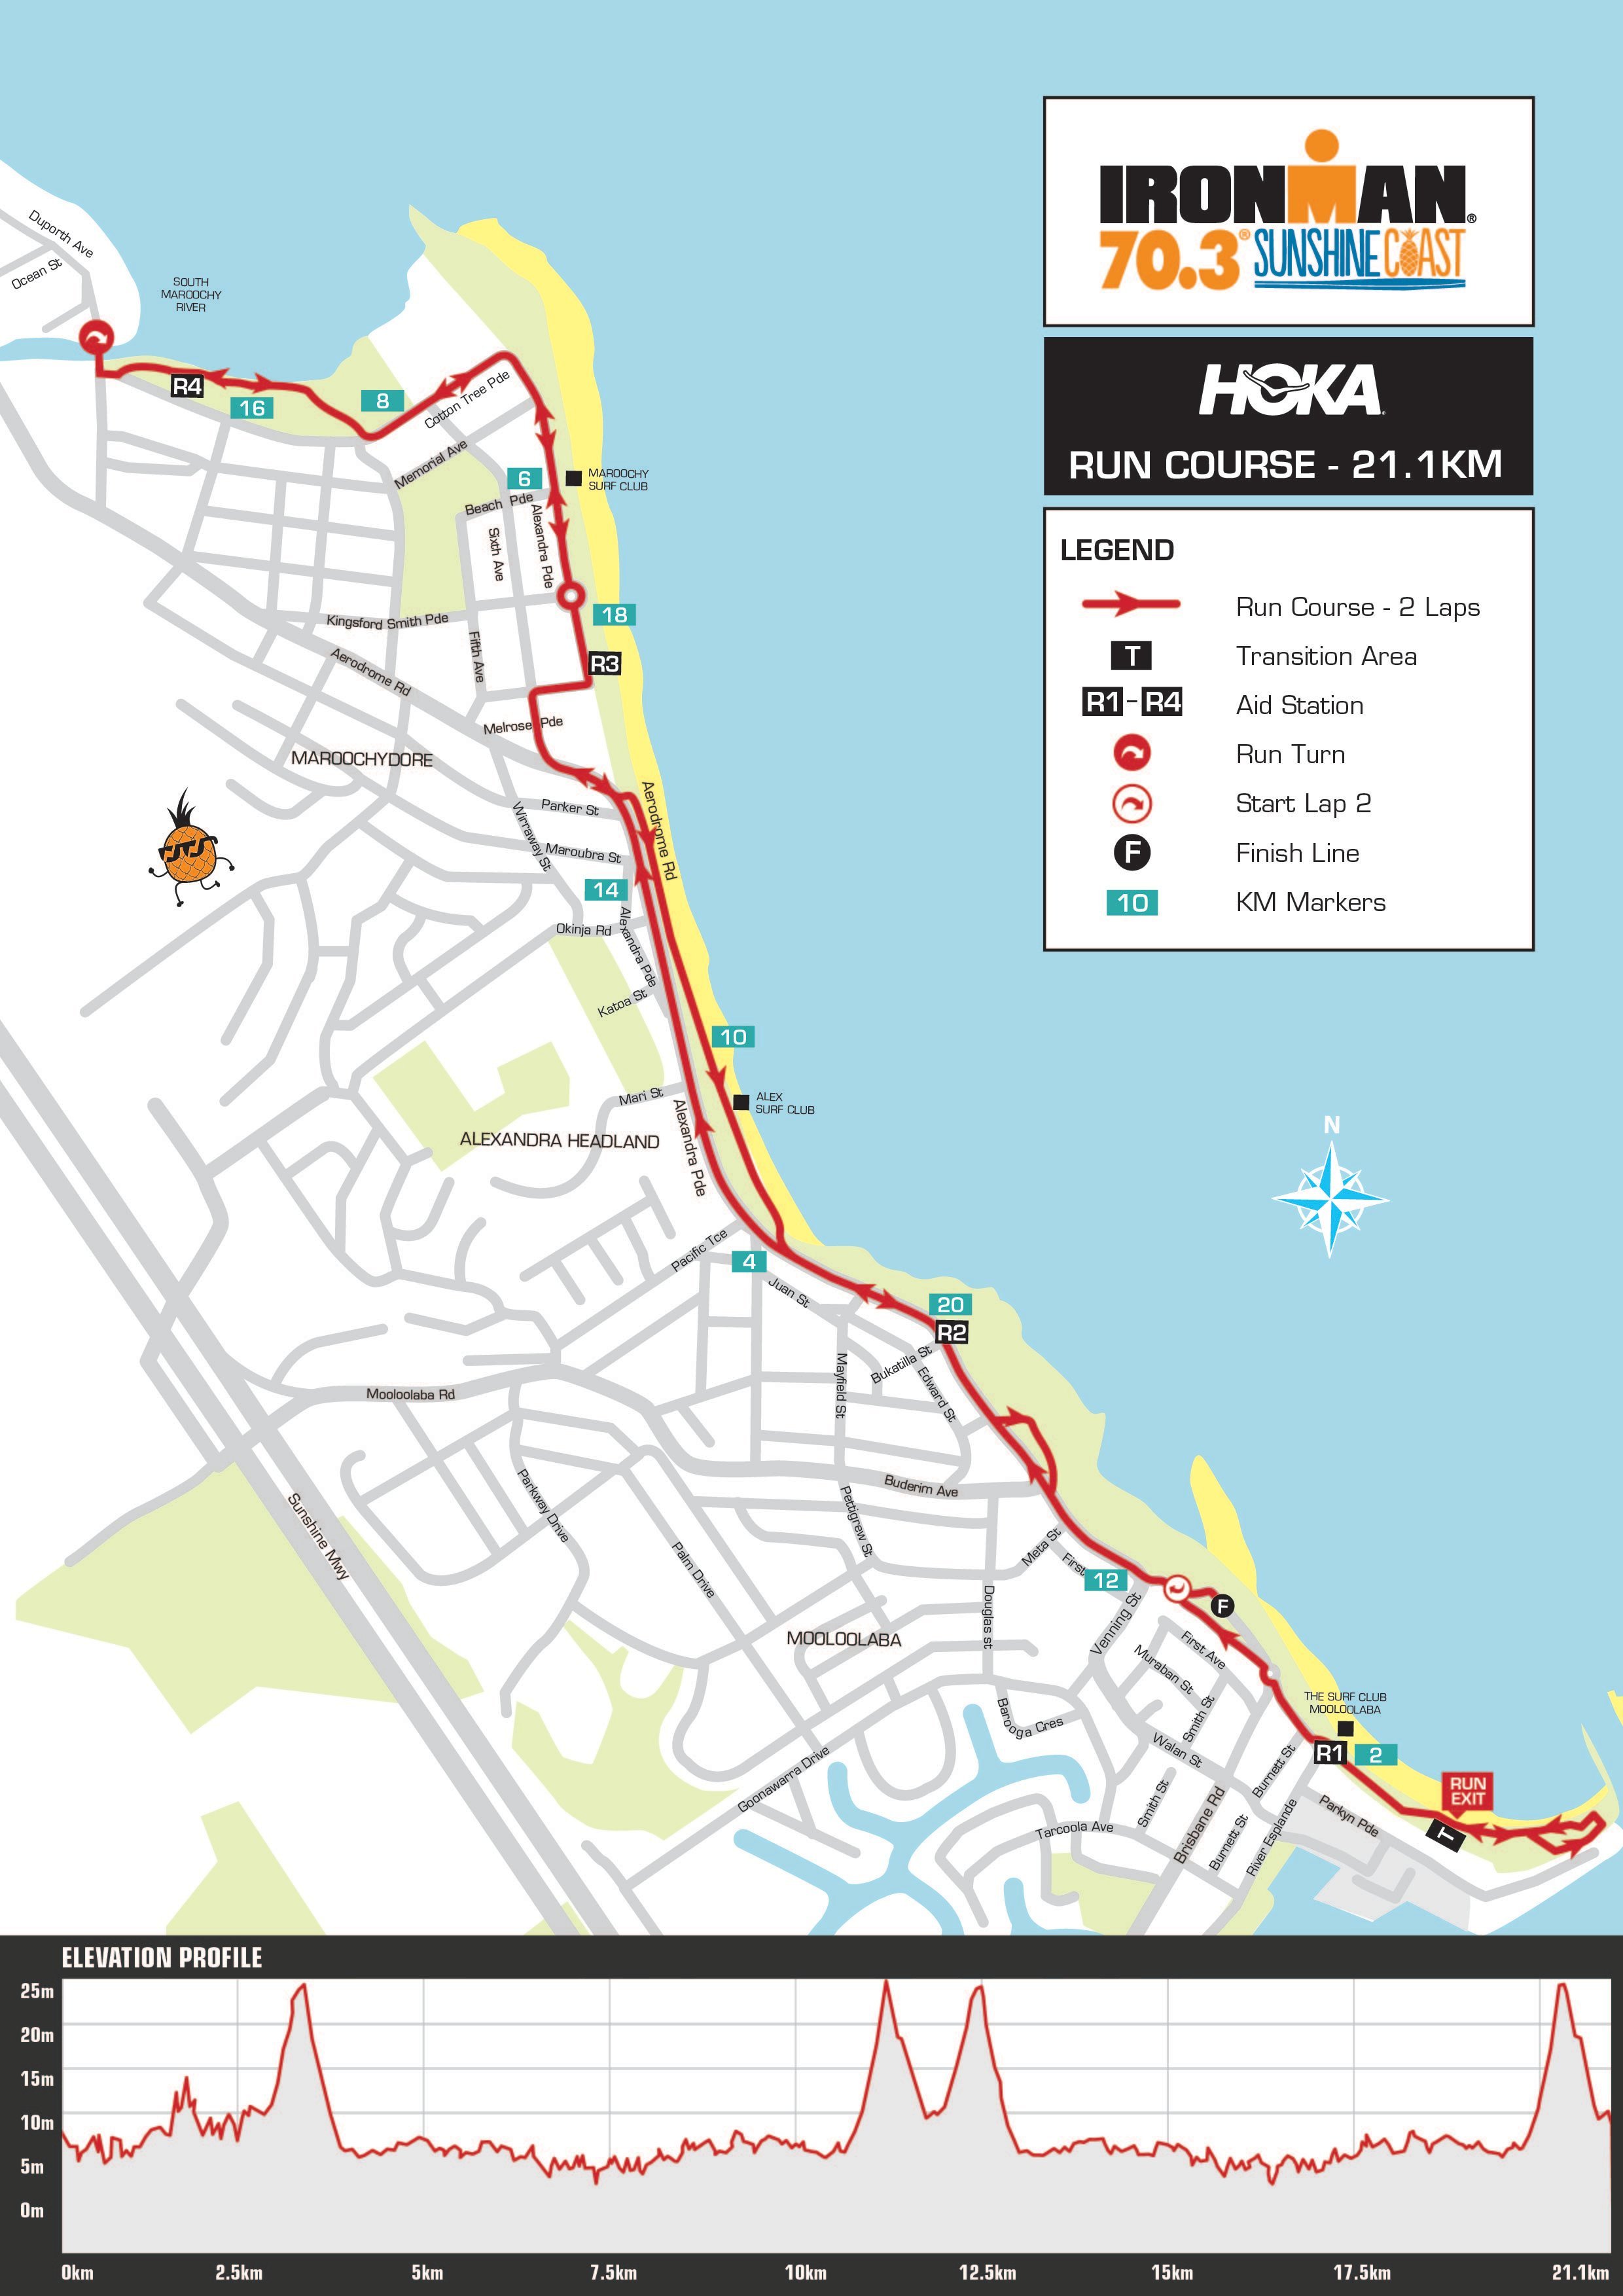 IRONMAN 70.3 Sunshine Coast Hoka Run Course